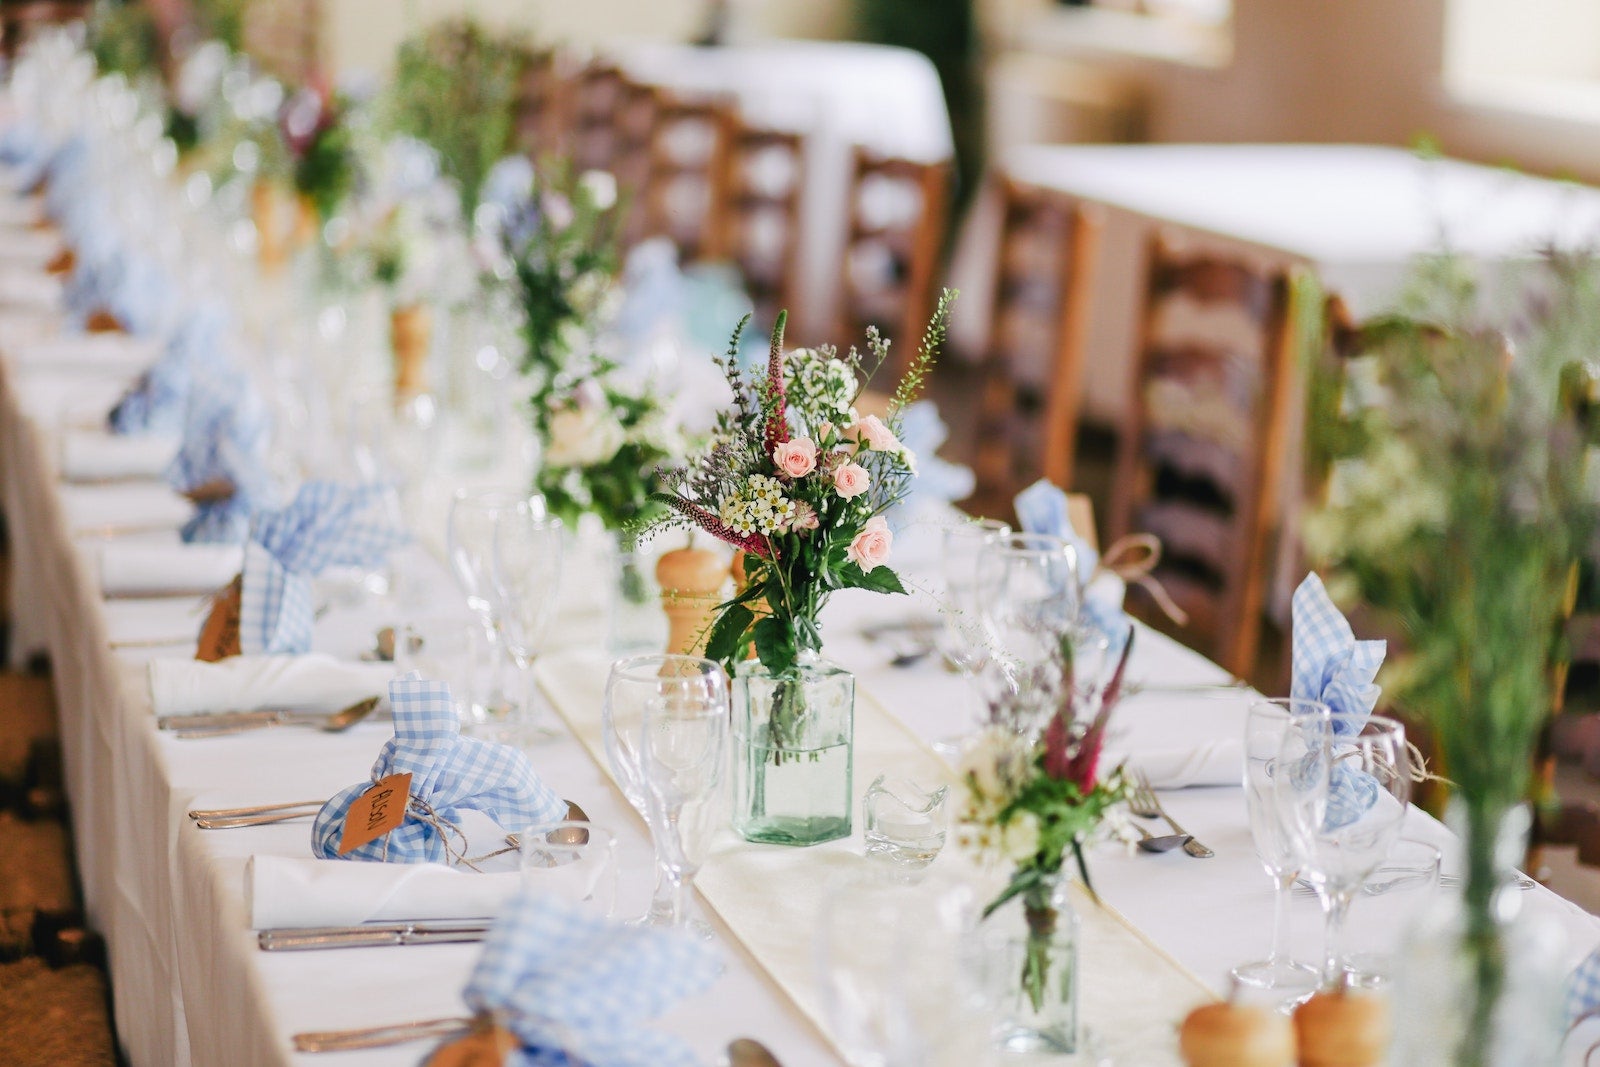 A wedding banquet table